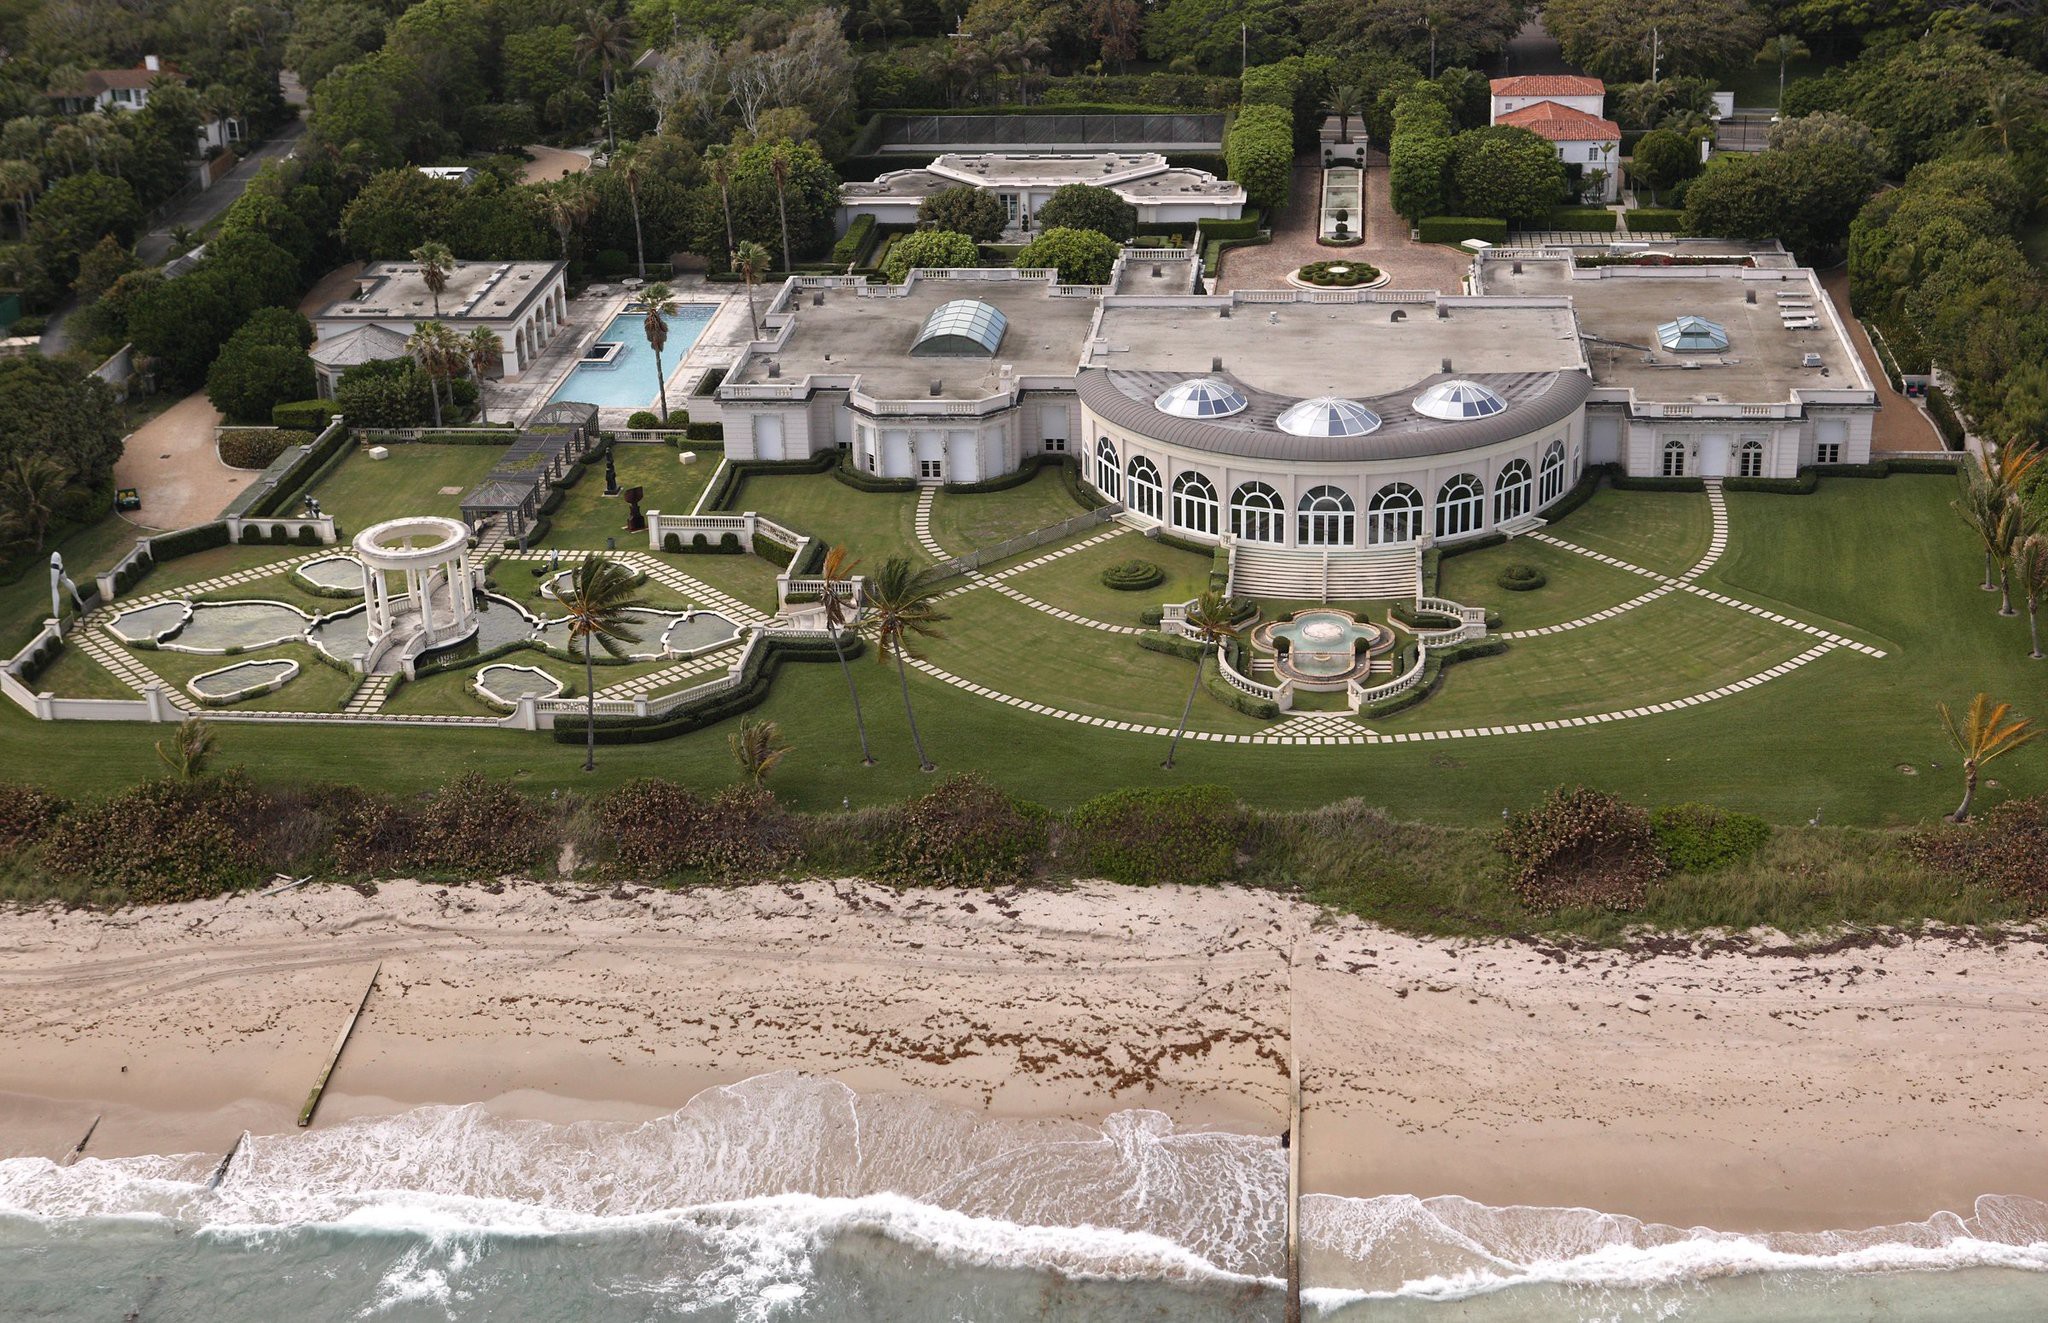 4. Maison de L’Amitie. Палм бич, Флорида, США — $913 млн. богачи, дома, самые дорогие